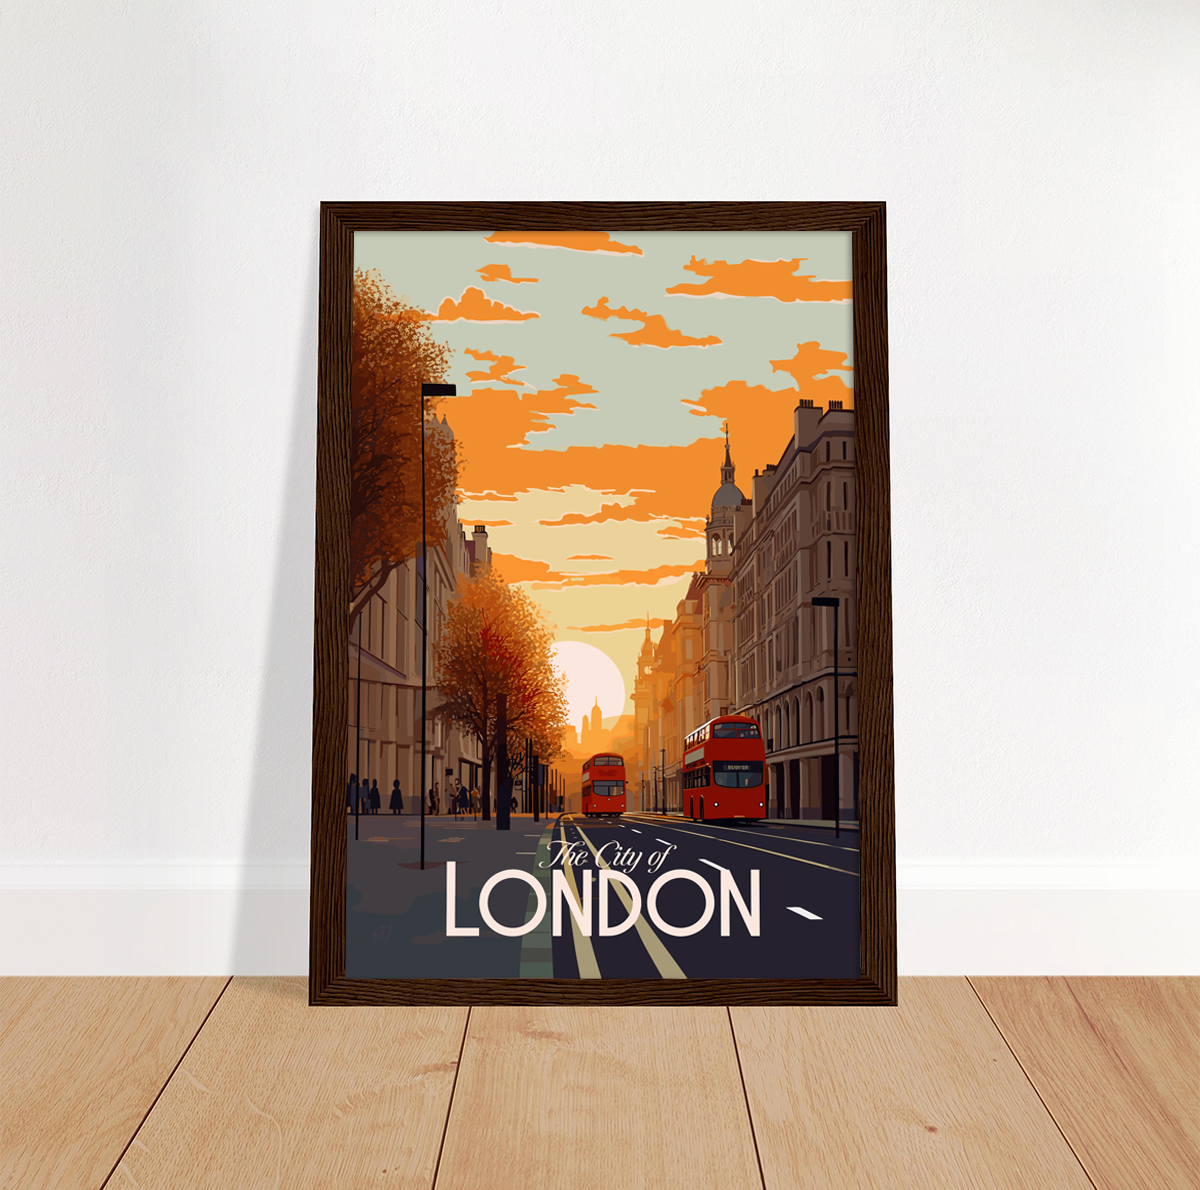 London poster by bon voyage design